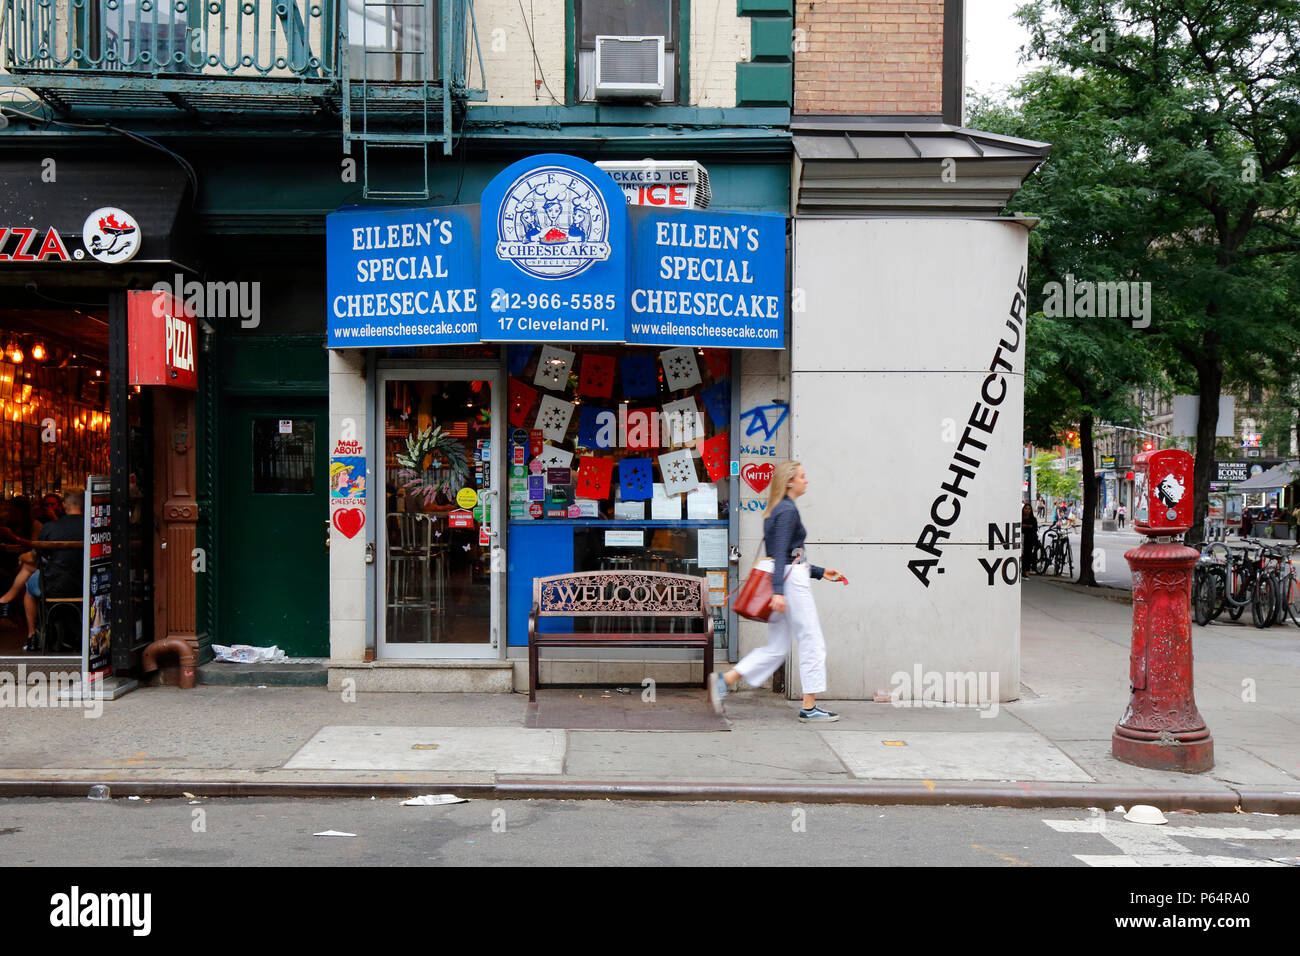 Eileen della speciale Cheesecake, 17 pl di Cleveland, New York, NY. esterno alla vetrina di un negozio di dolci nel quartiere Nolita di Manhattan. Foto Stock